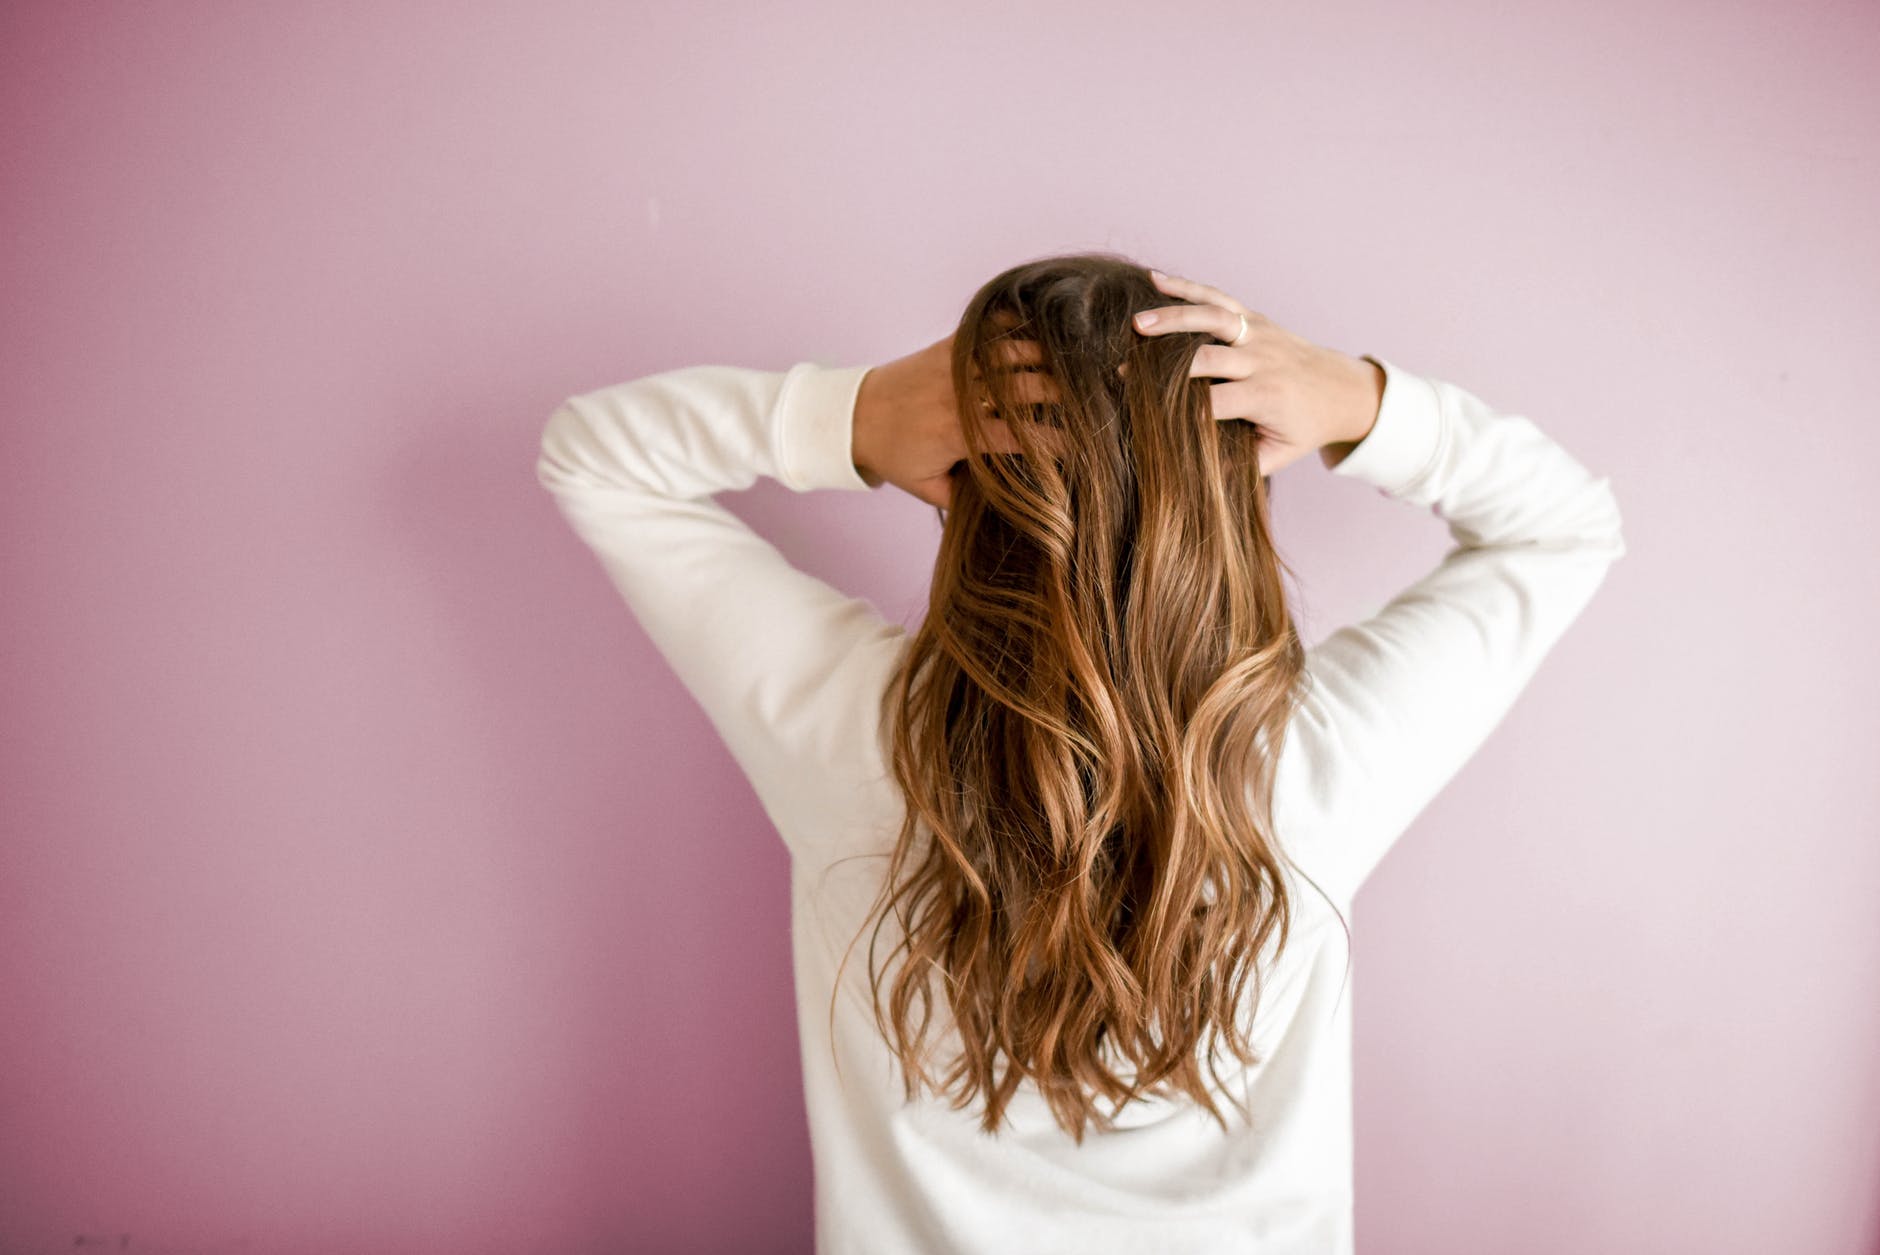 Comment faire pour avoir des cheveux en bonne santé ?